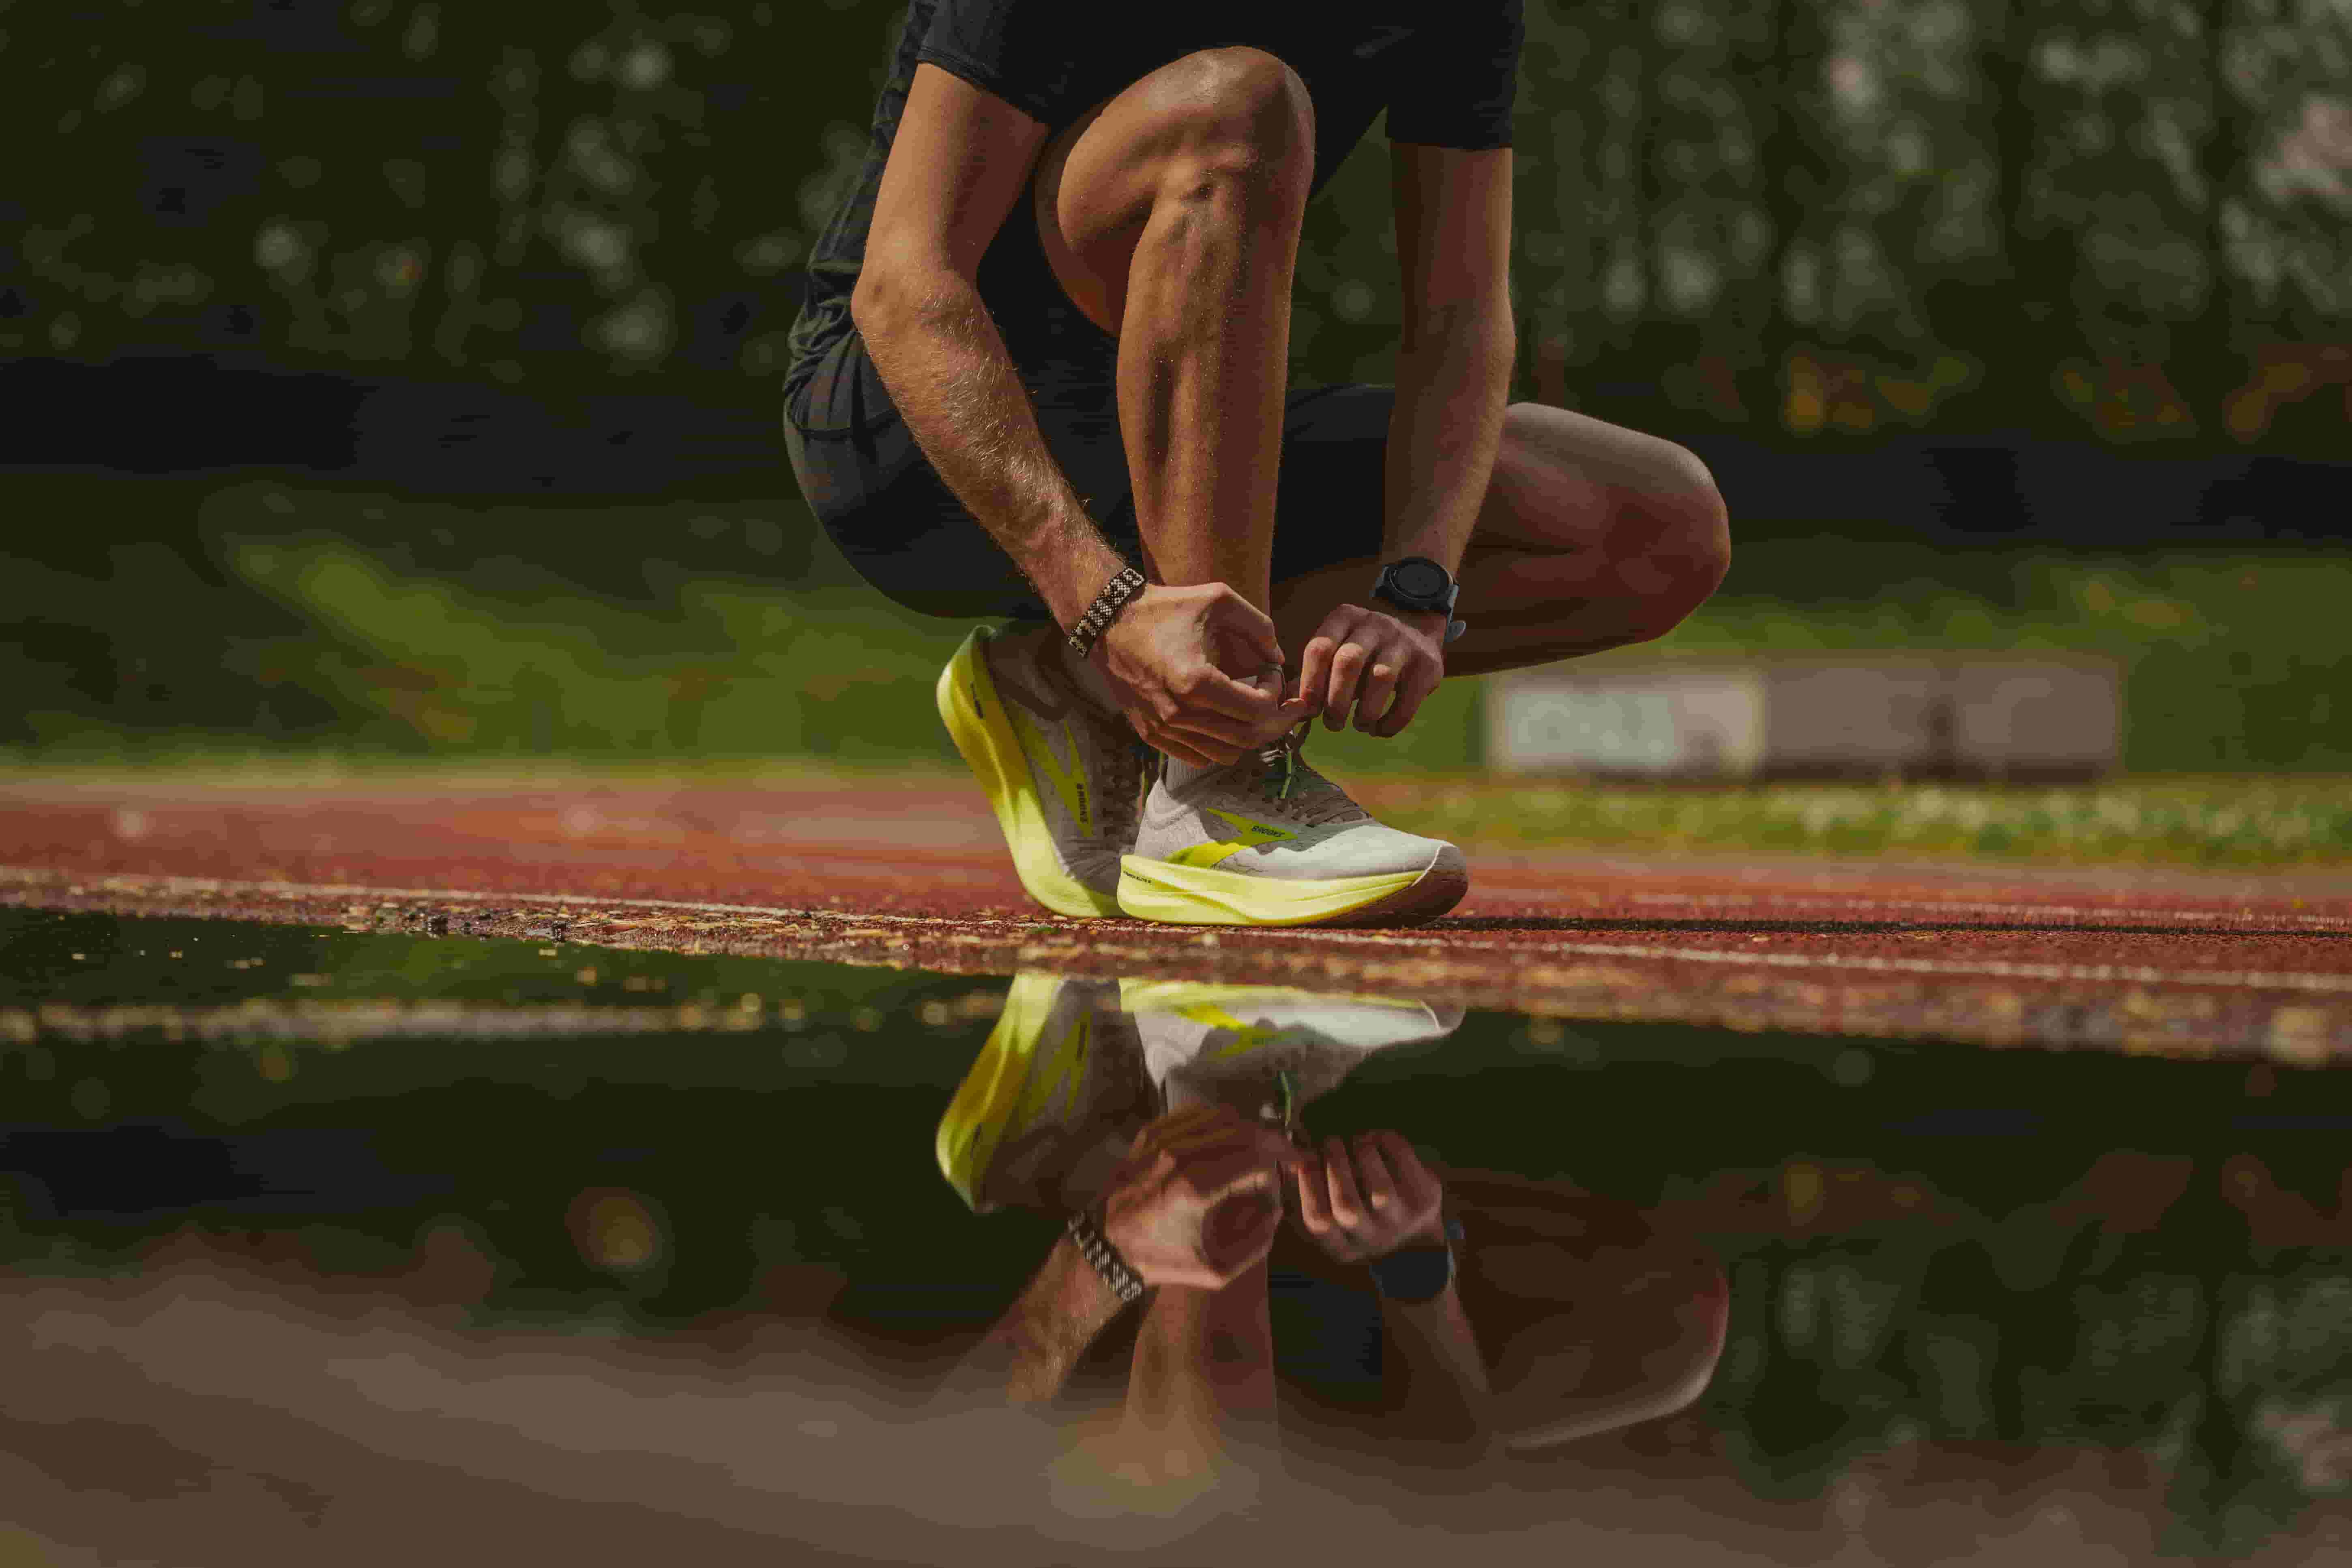 Calzado deportivo para correr: tips para su selección